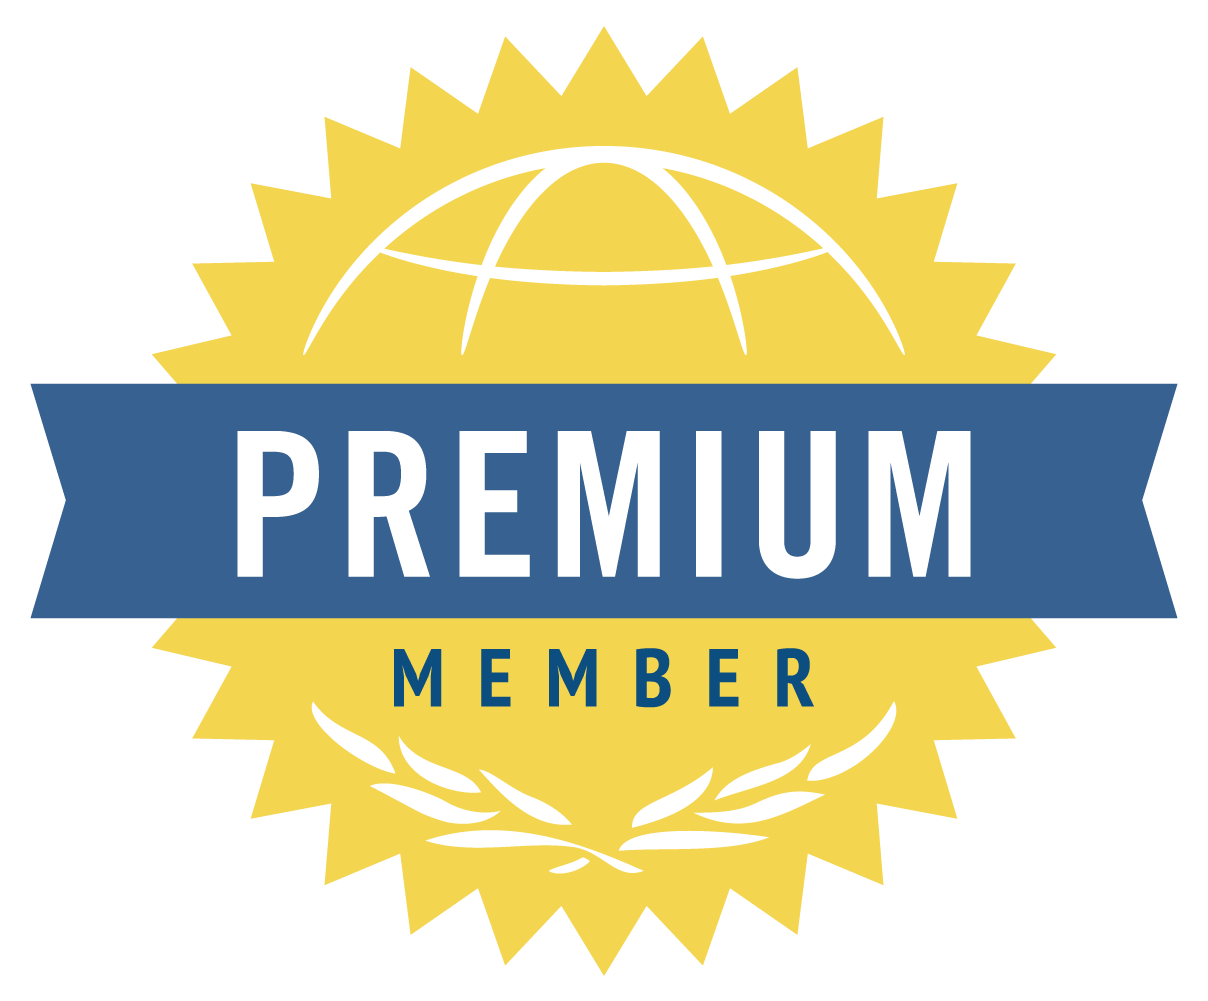 Premium membership